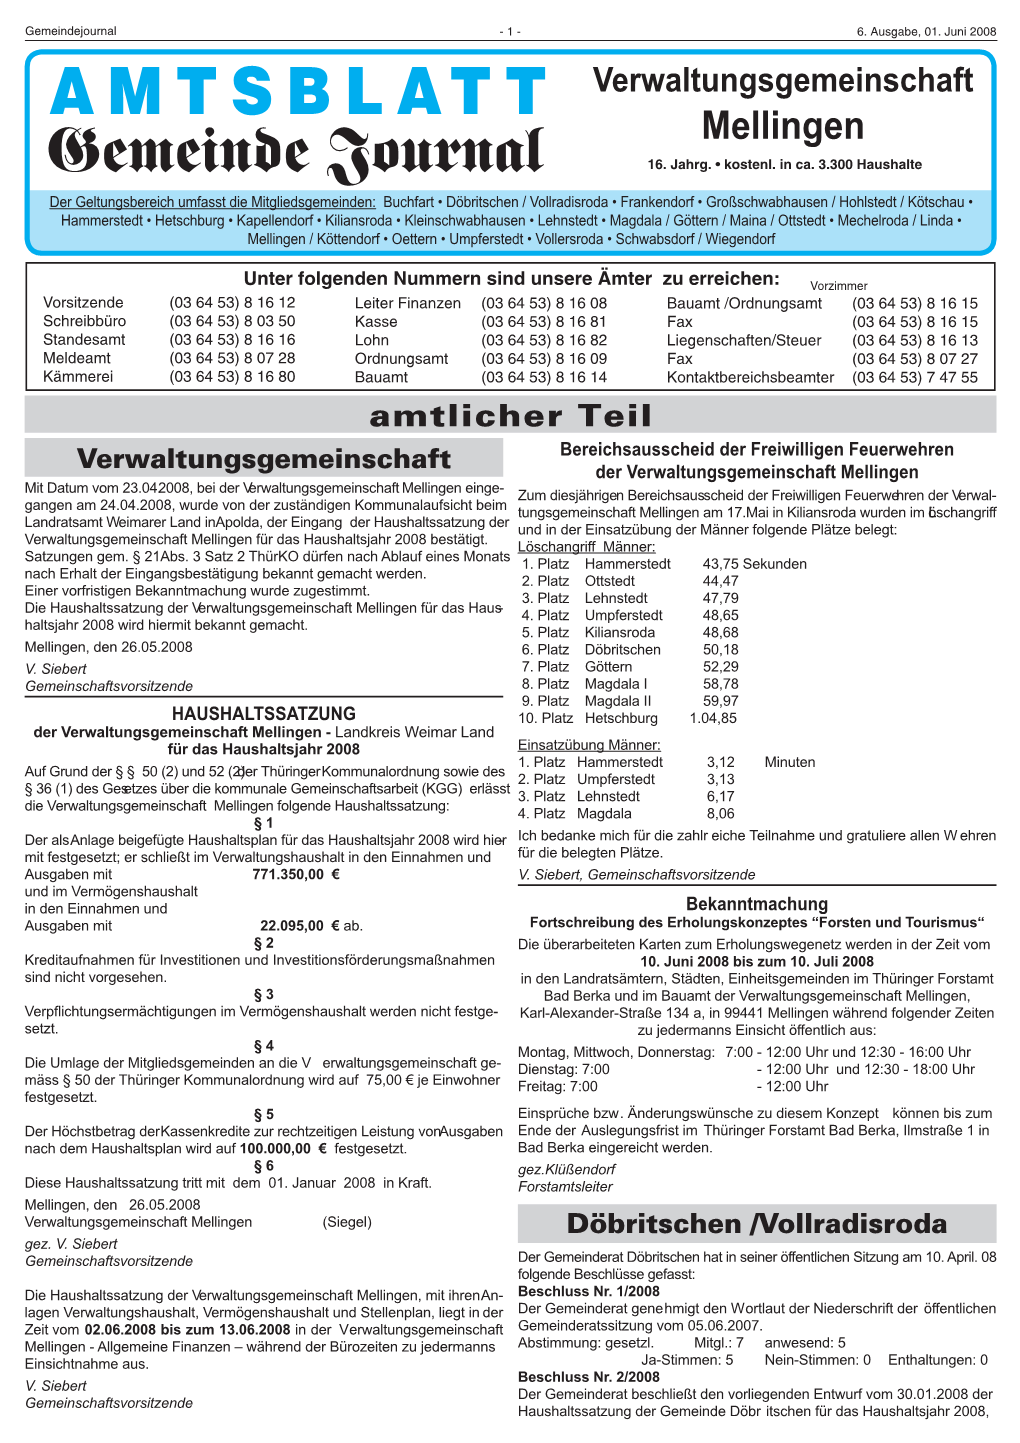 AMTSBLATT Verwaltungsgemeinschaft Mellingen Gemeinde Journal 16